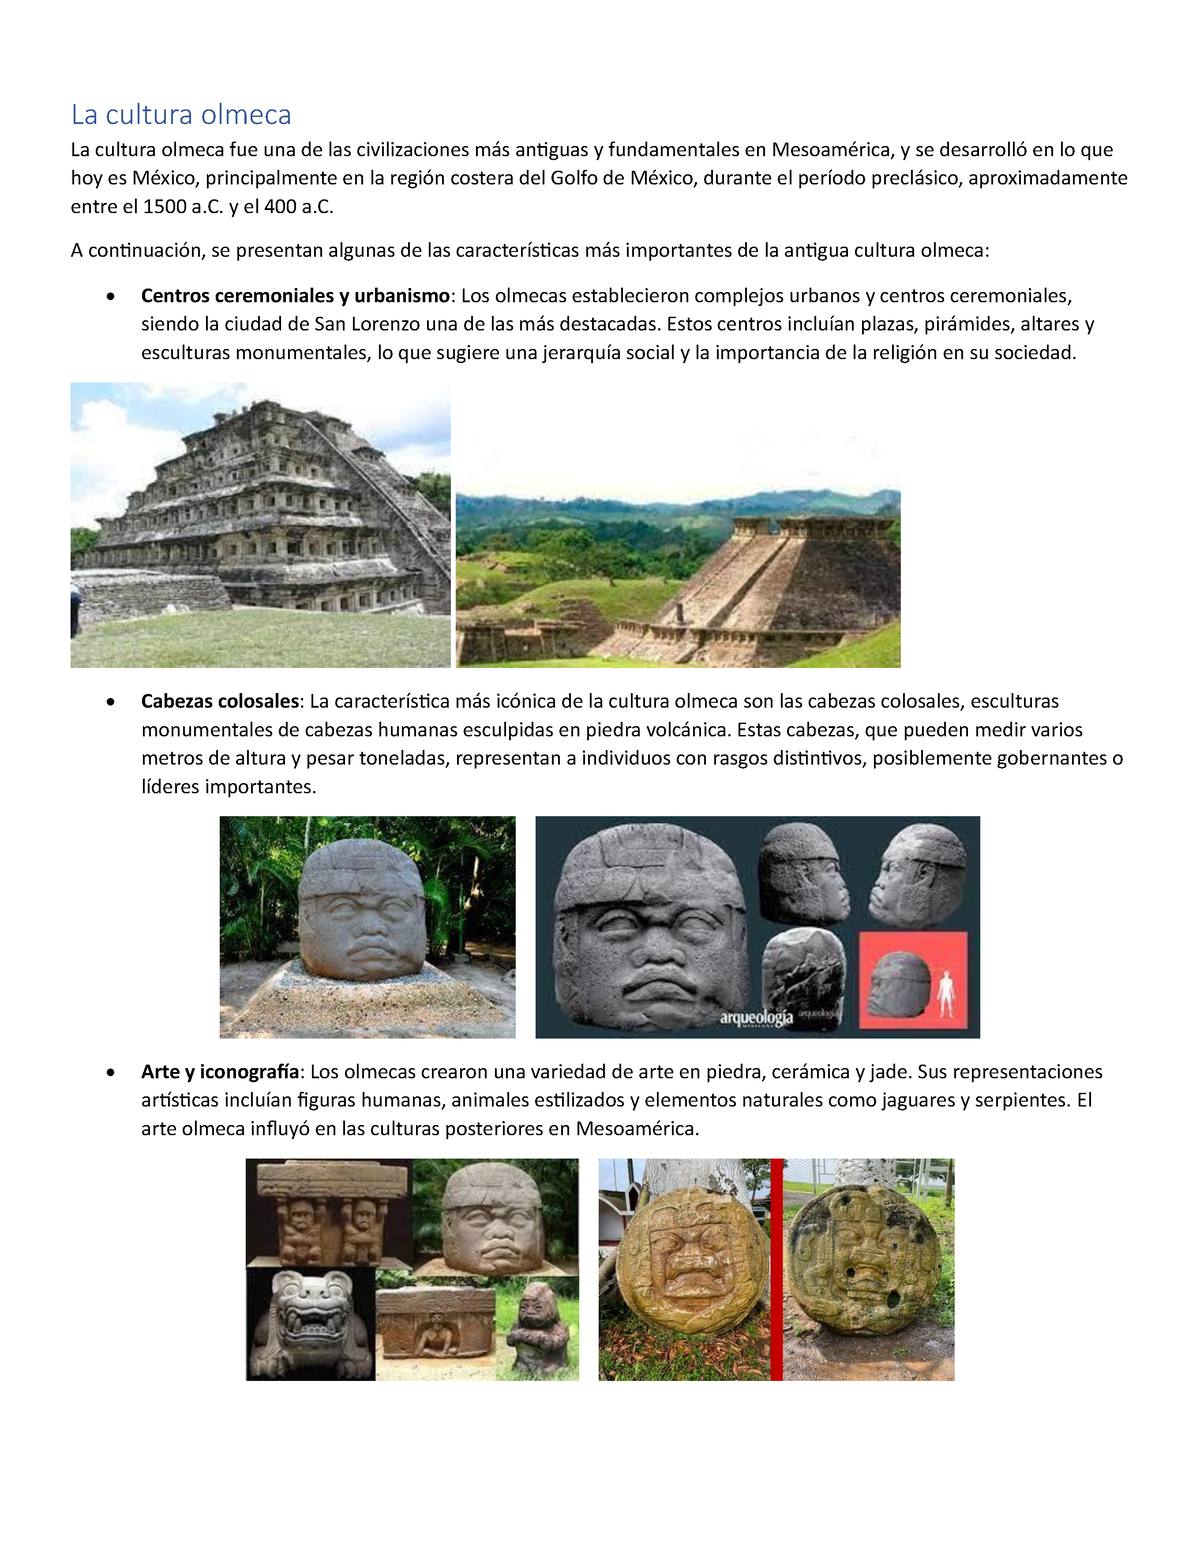 La Cultura Olmeca Y El 400 A A Continuación Se Presentan Algunas De Las Características Más 3696